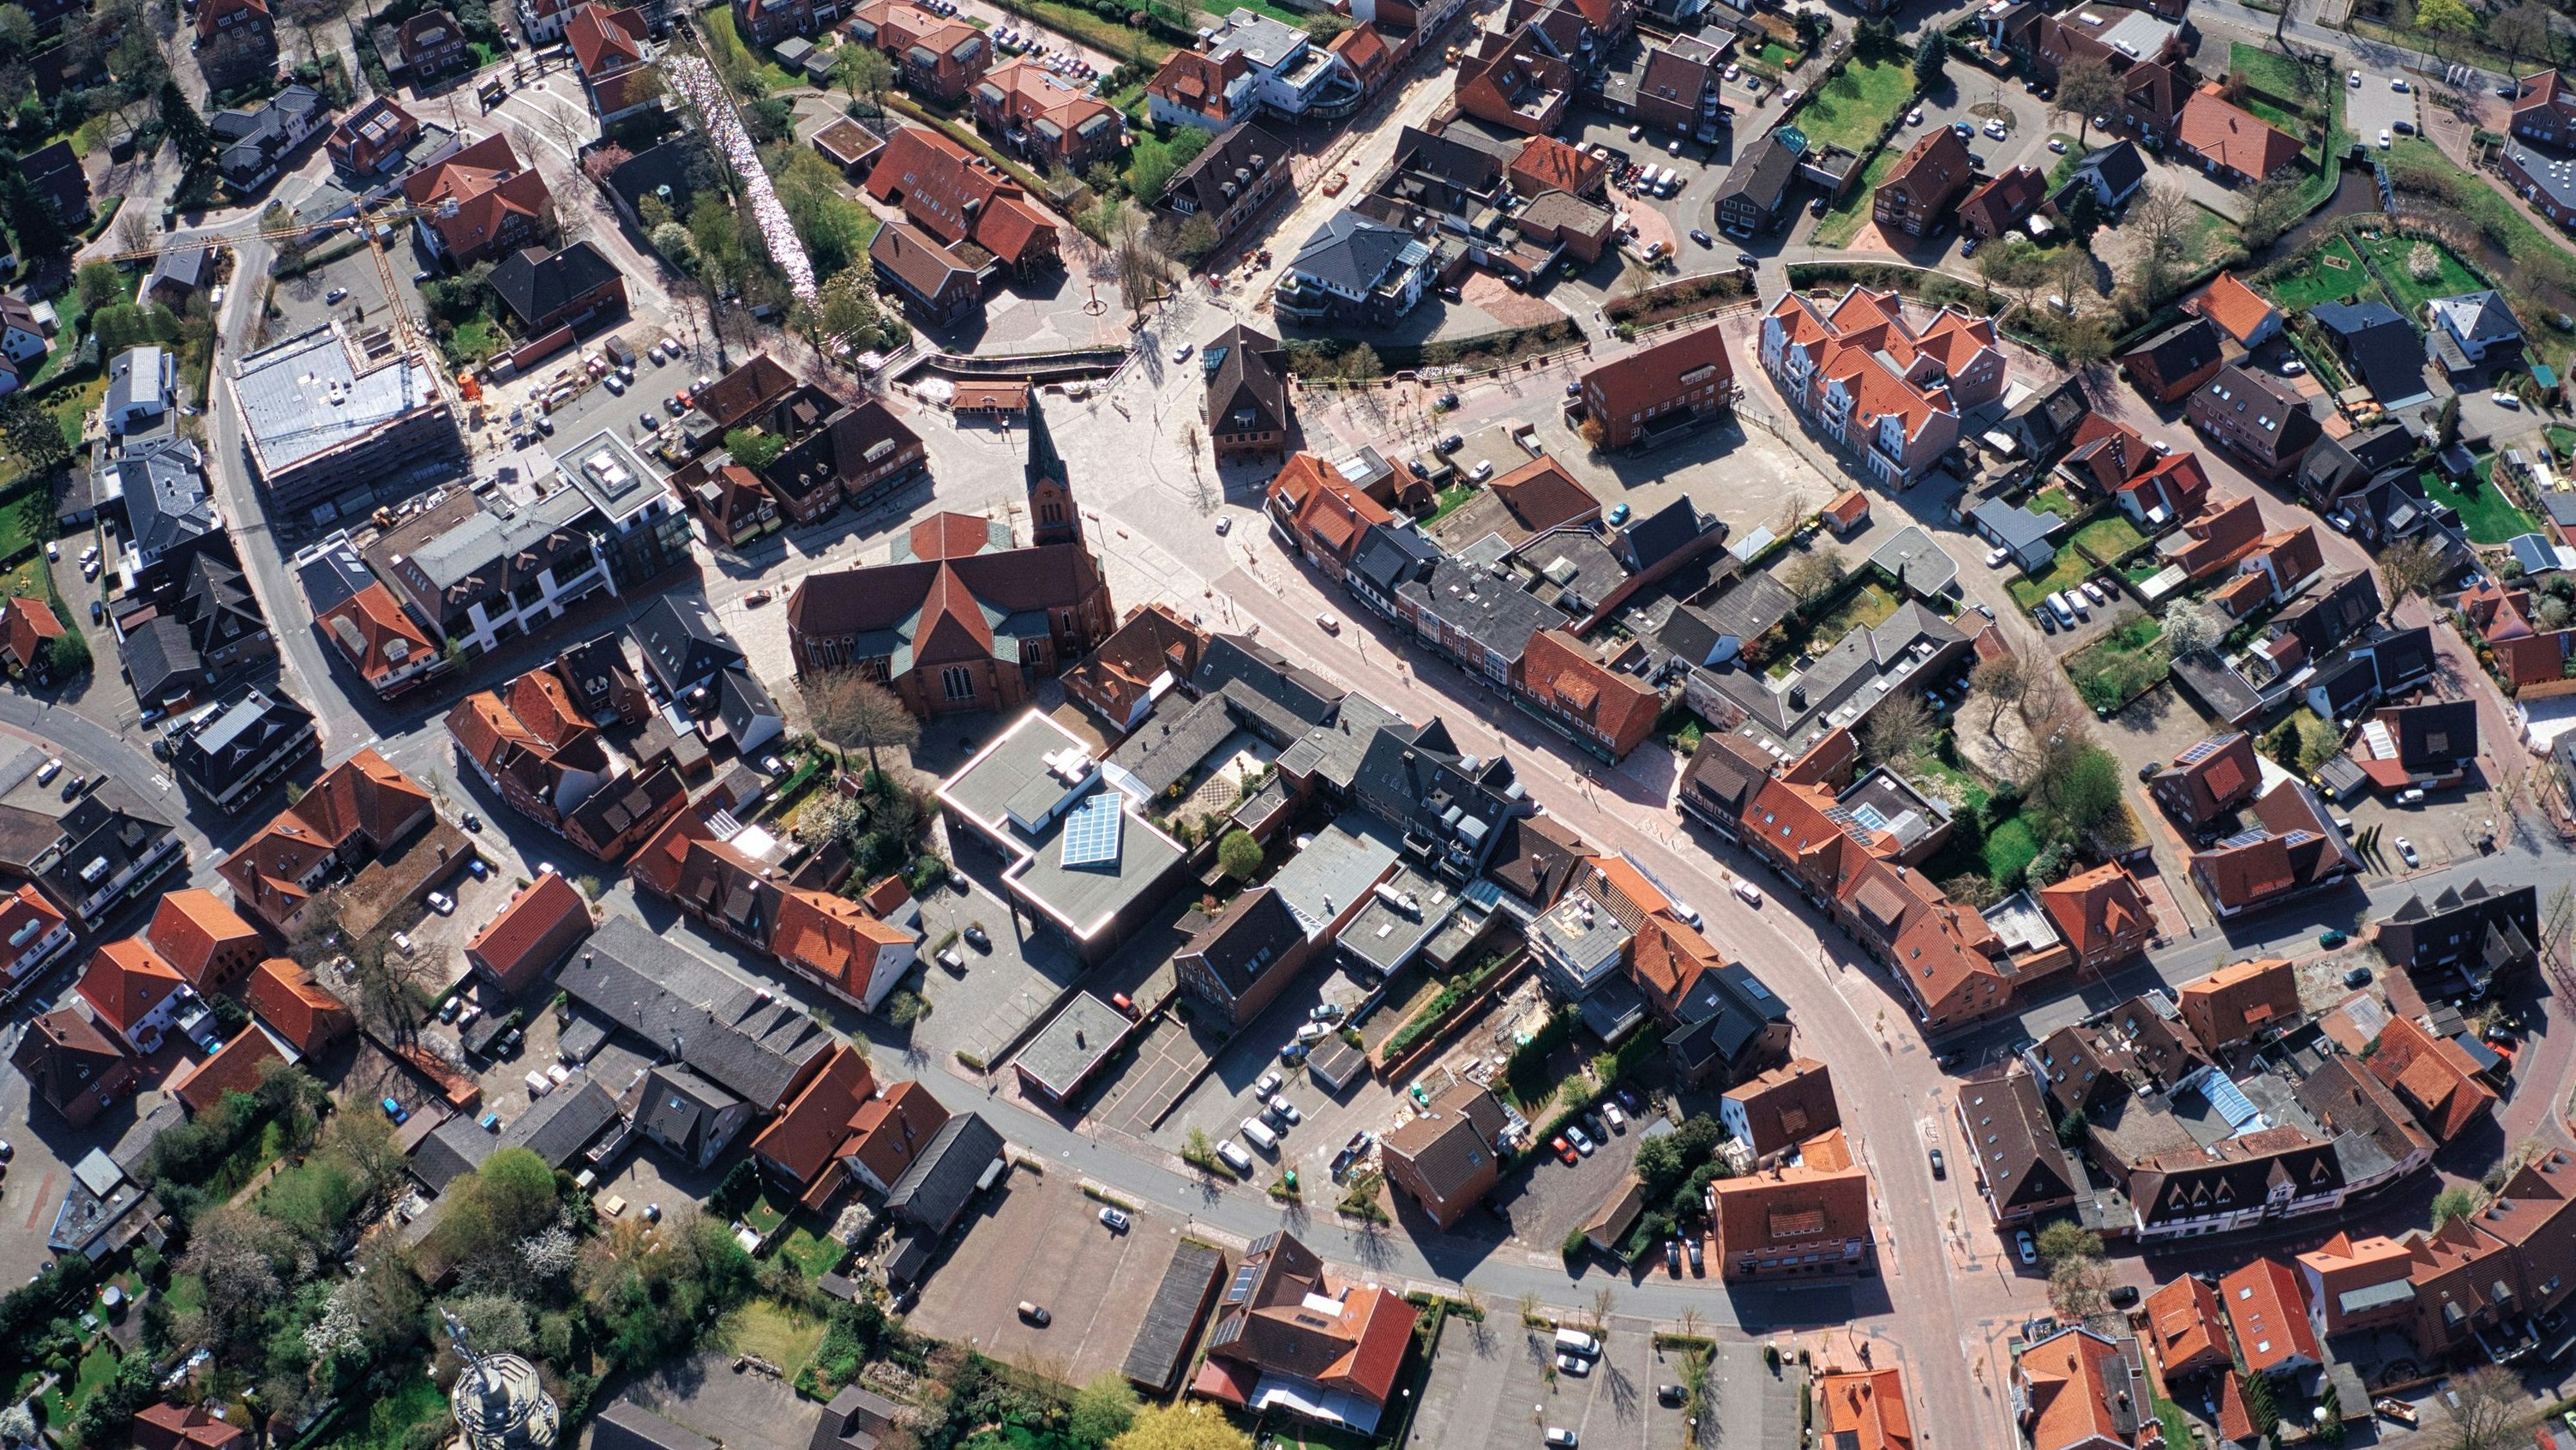 380.000 Euro könnten in diesem Jahr für die Belebung der Innenstadt eingesetzt werden, wenn der Haushaltsentwurf verabschiedet wird. Foto: Schiwy Luftbildaufnahmen